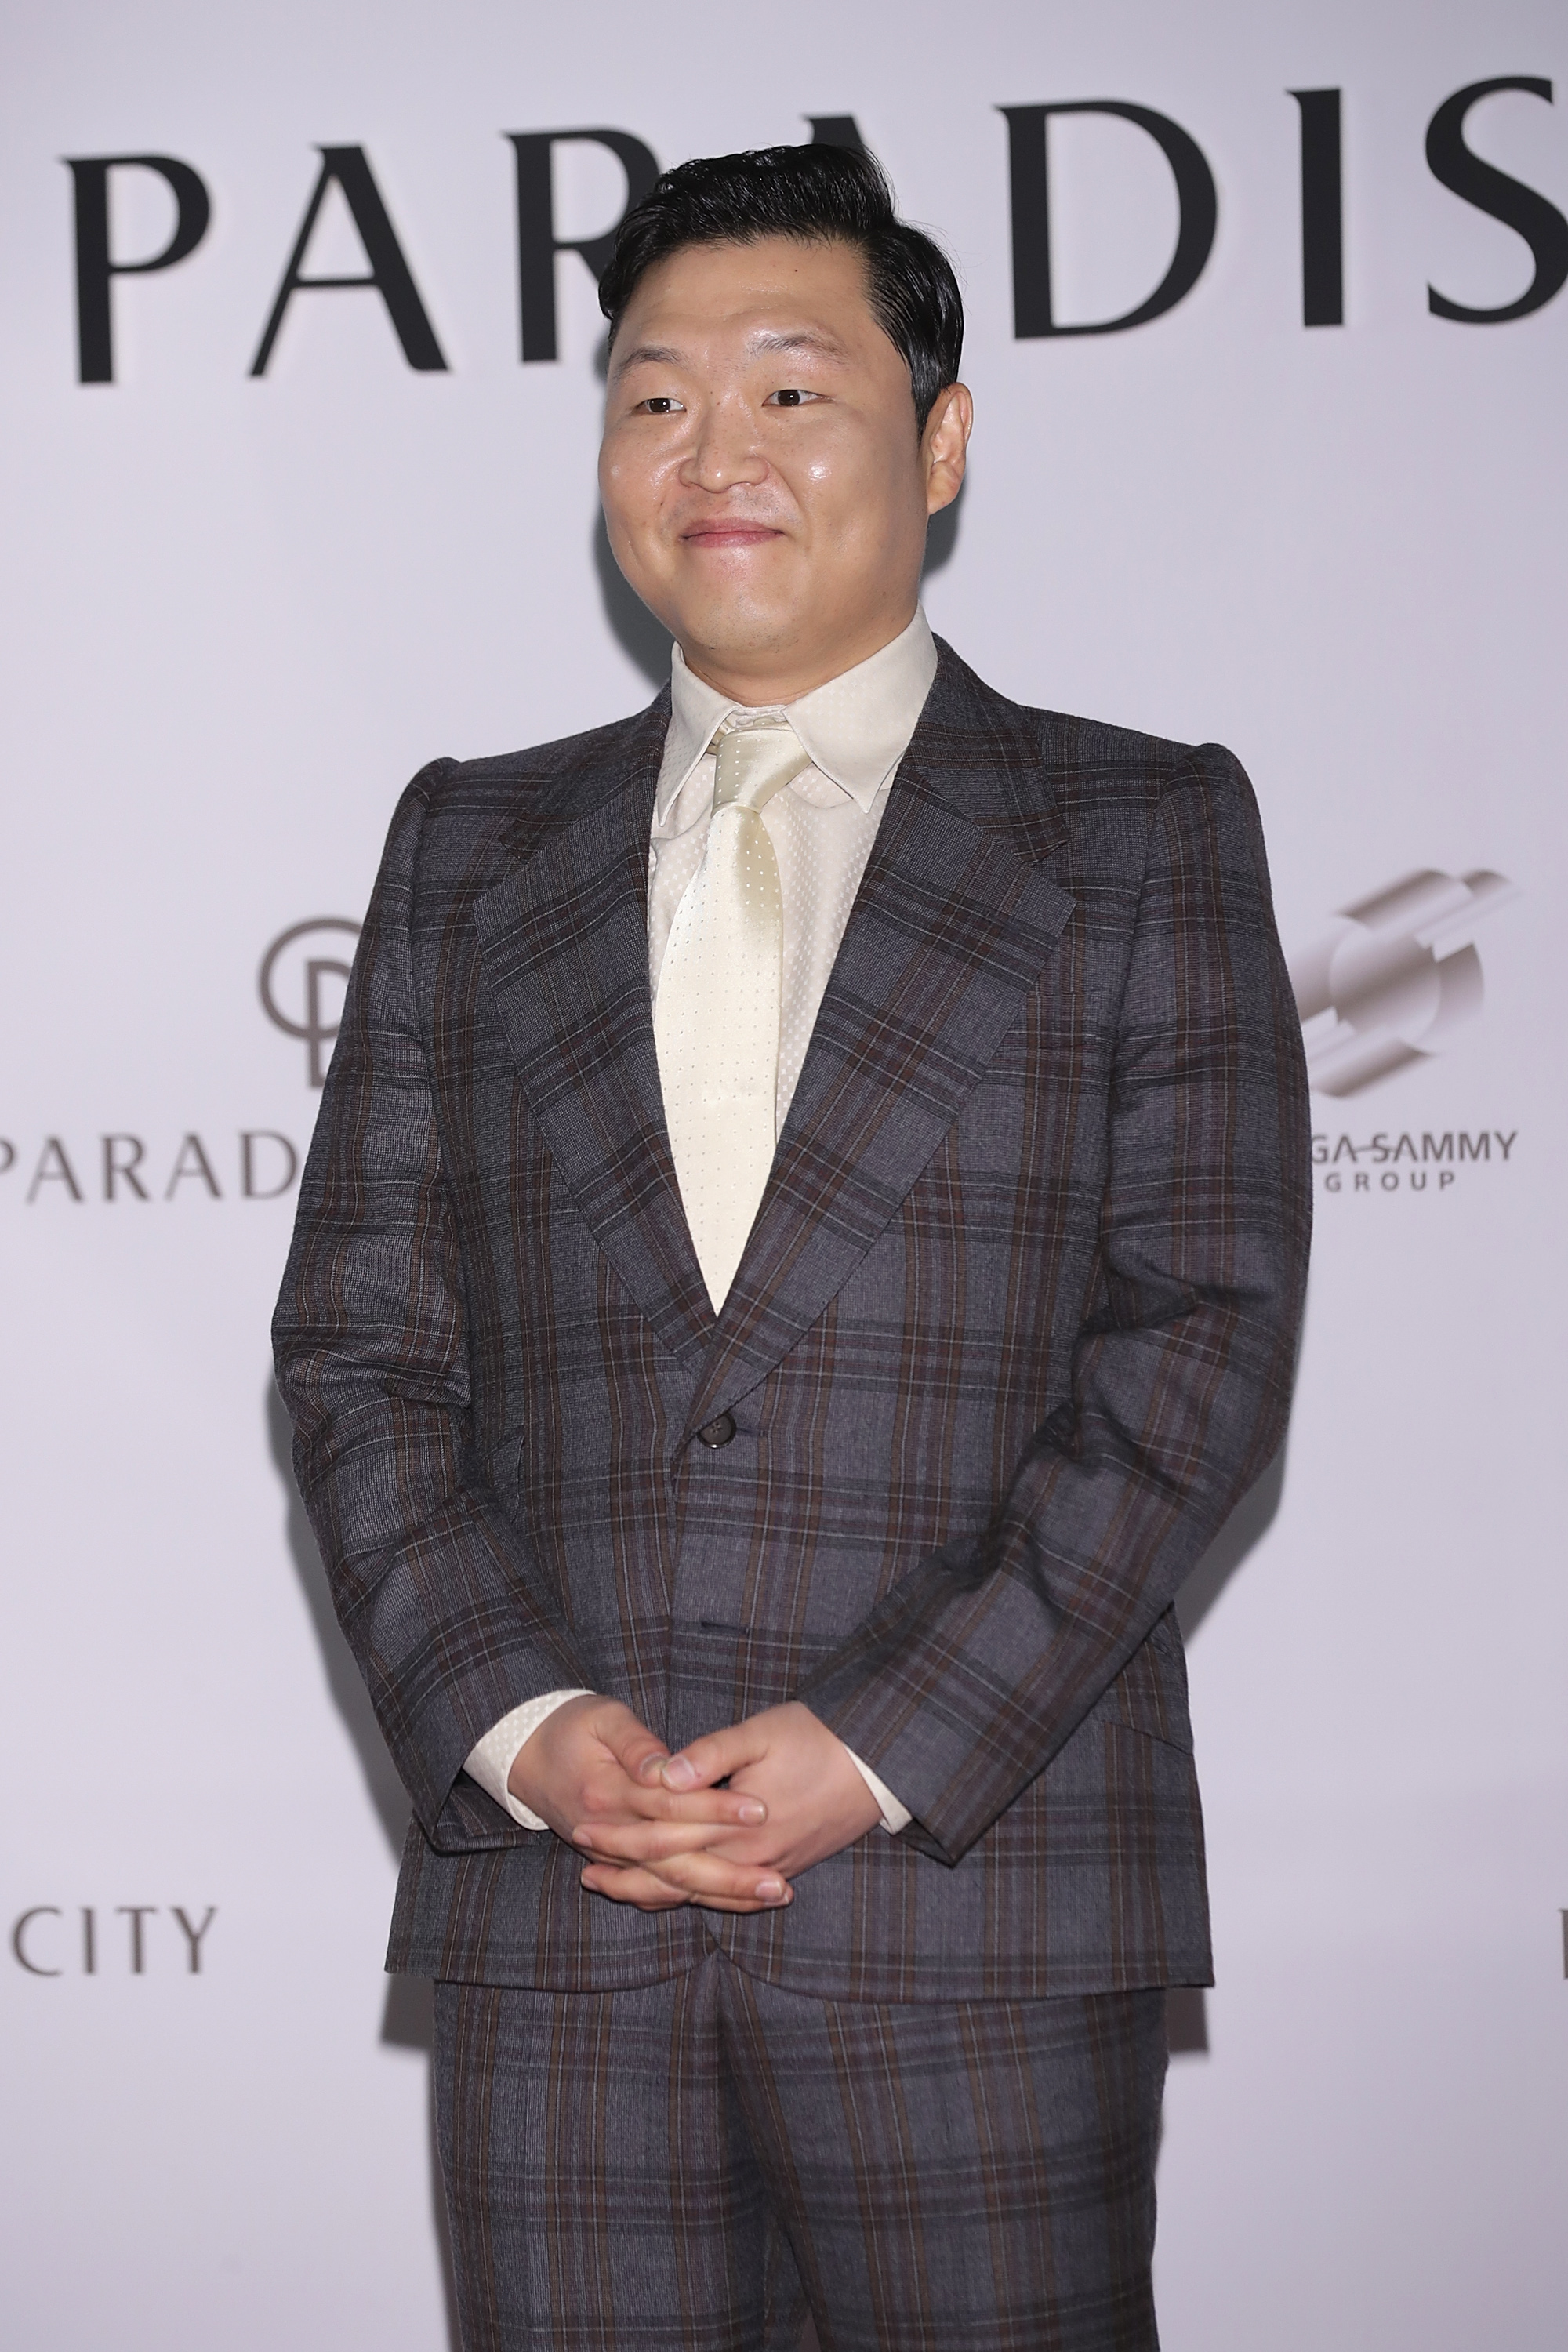 Psy bei der großen Eröffnung von "PARADISE CITY" am 20. April 2017 in Incheon, Südkorea. | Quelle: Getty Images